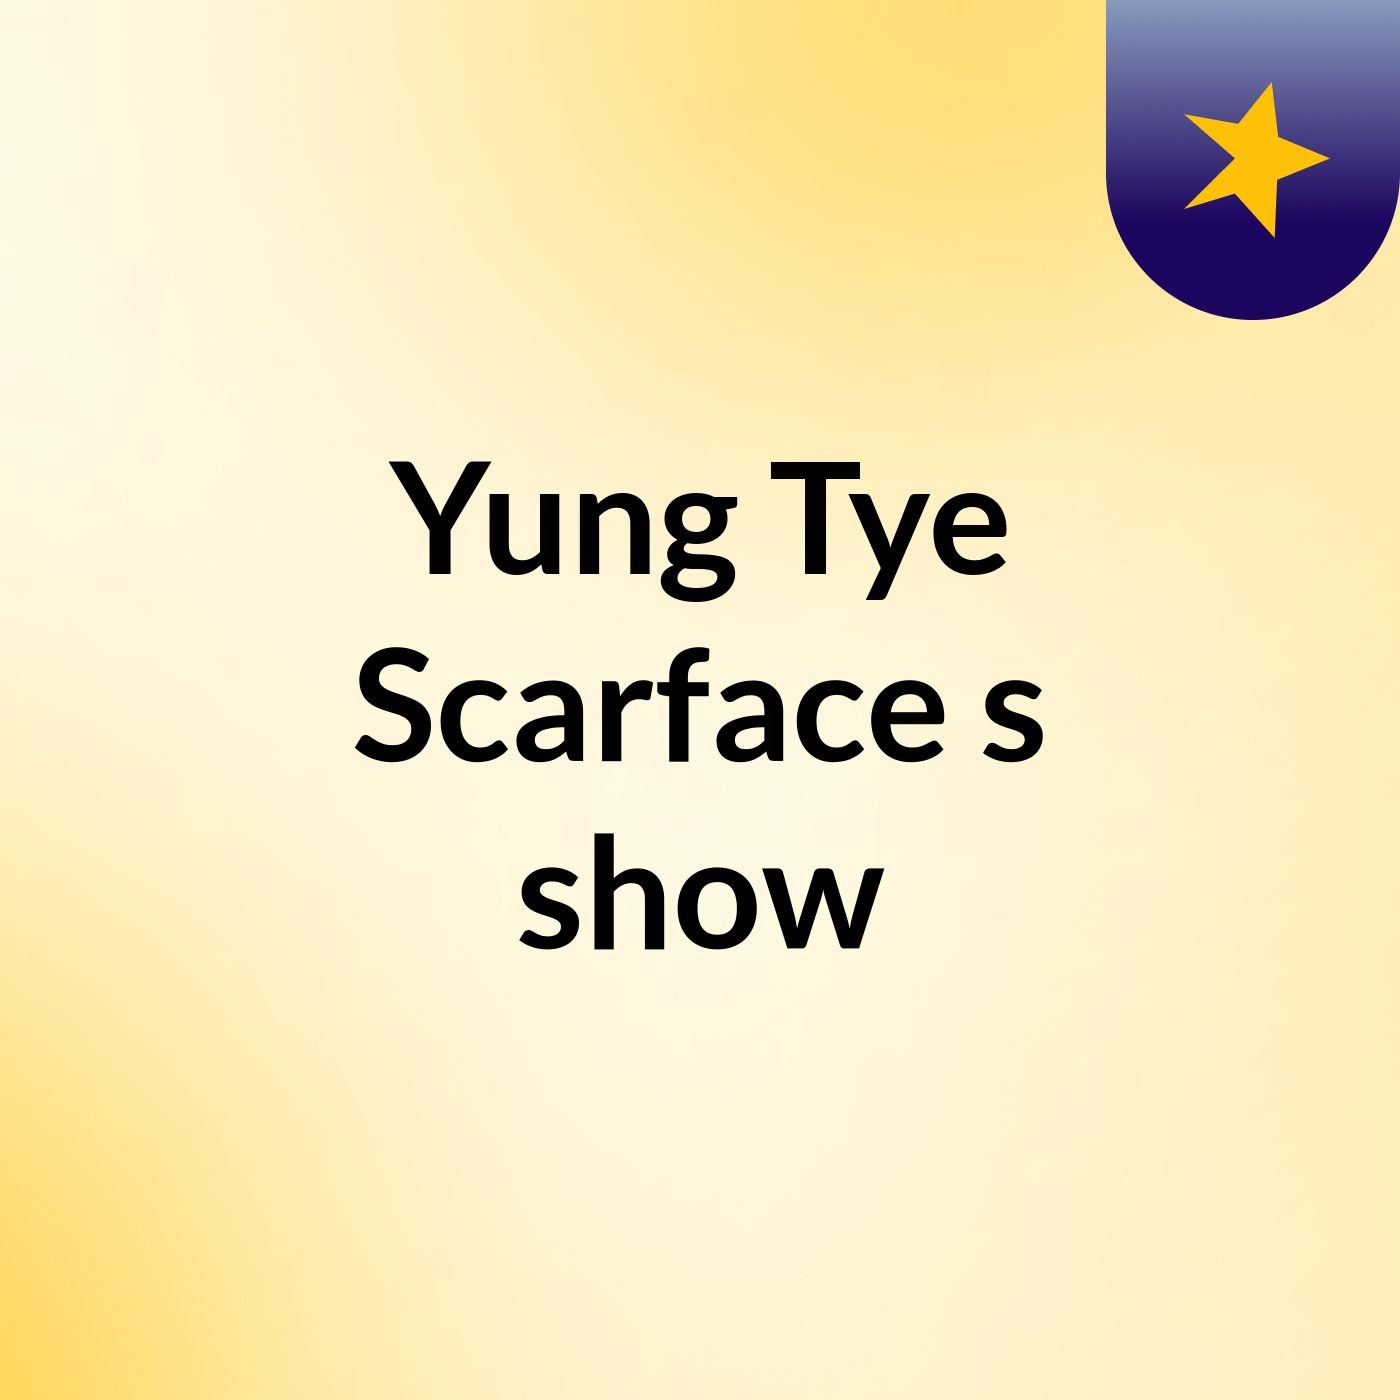 Yung Tye Scarface's show